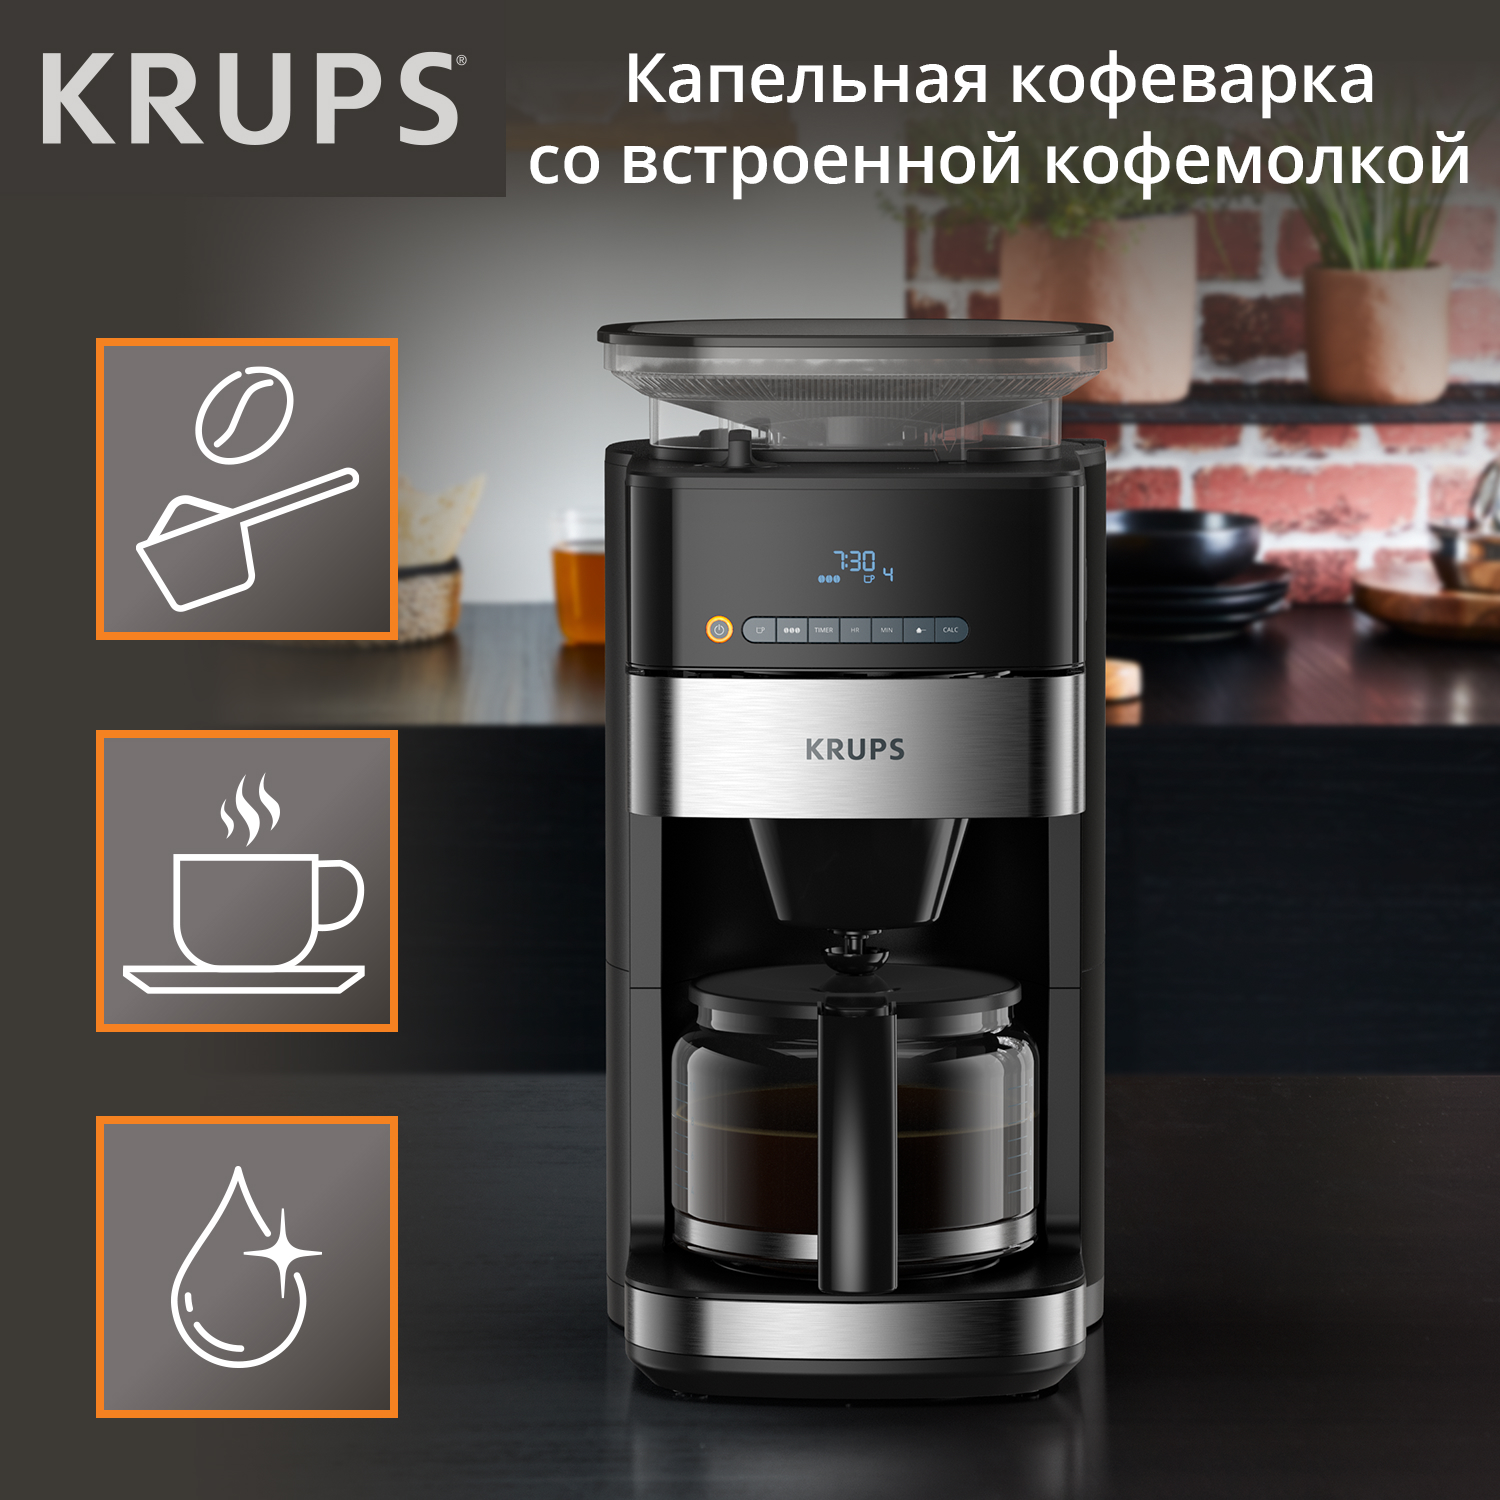 Кофеварка капельного типа Krups Grind Aroma KM832810 с кофемолкой, черный/серебристый кофеварка капельного типа krups grind aroma km832810 с кофемолкой серебристый